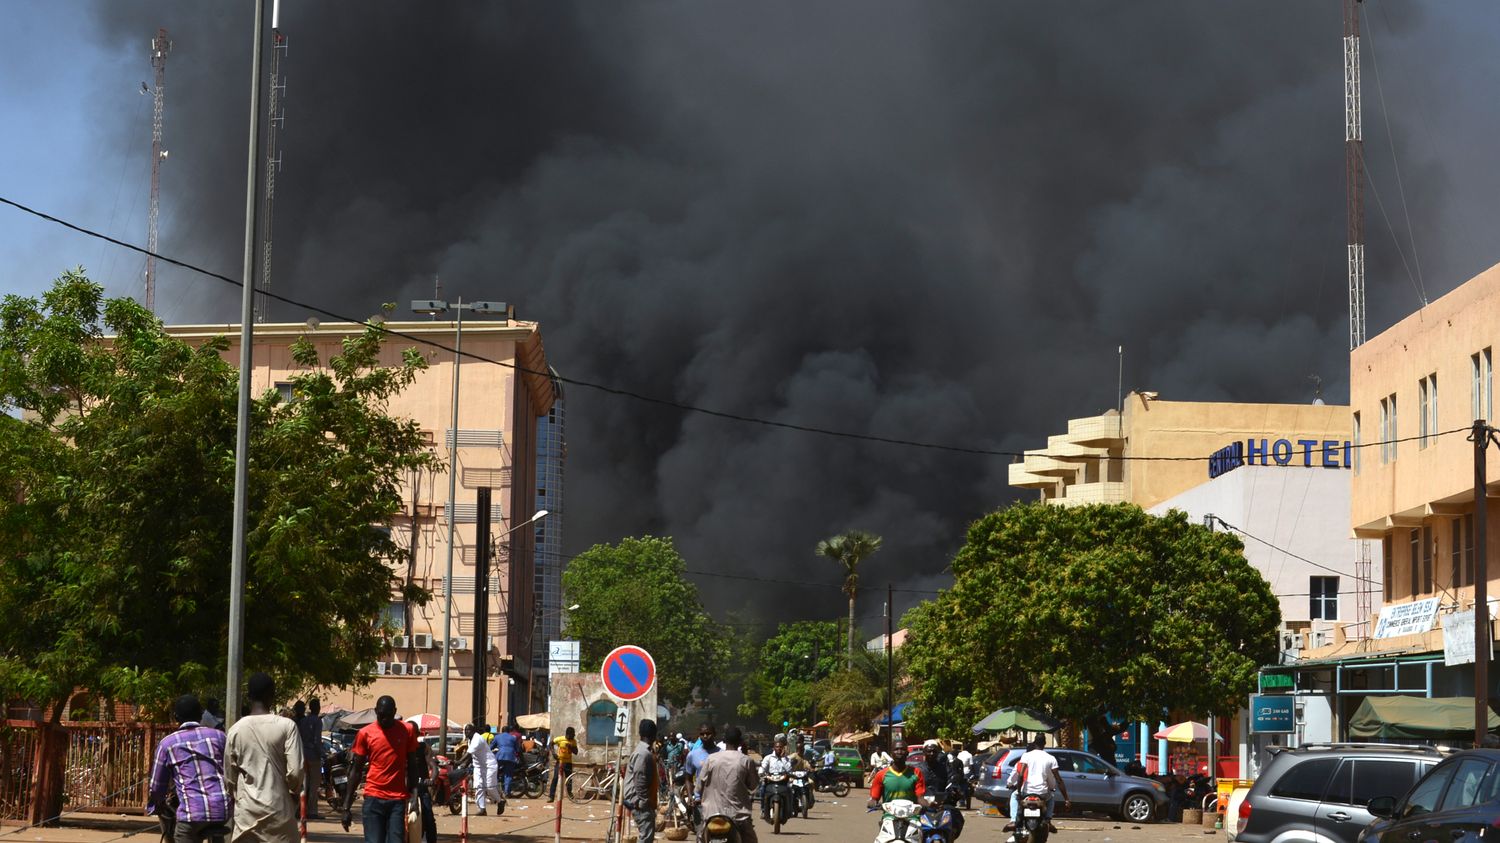 2018 ouagadougou attack